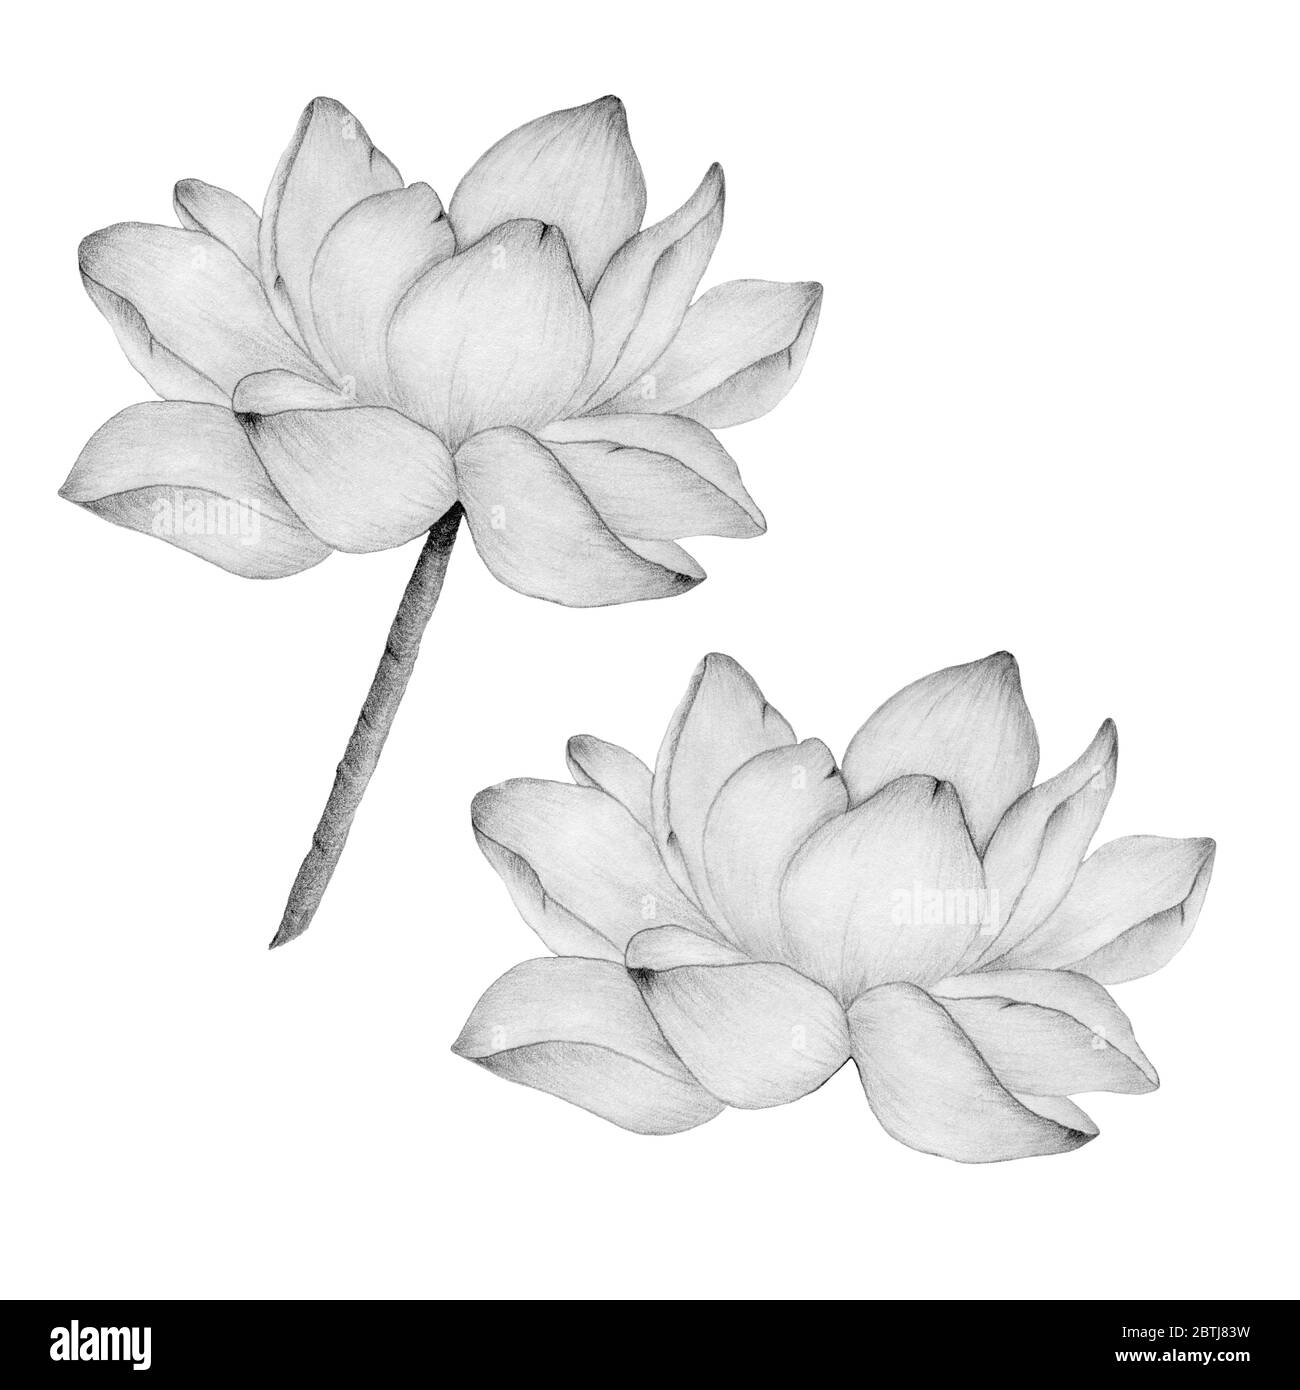 fiore di loto in disegno a matita isolato su bianco, illustrazione botanica  con fiore di loto realistico, disegno a matita con giglio d'acqua Foto  stock - Alamy